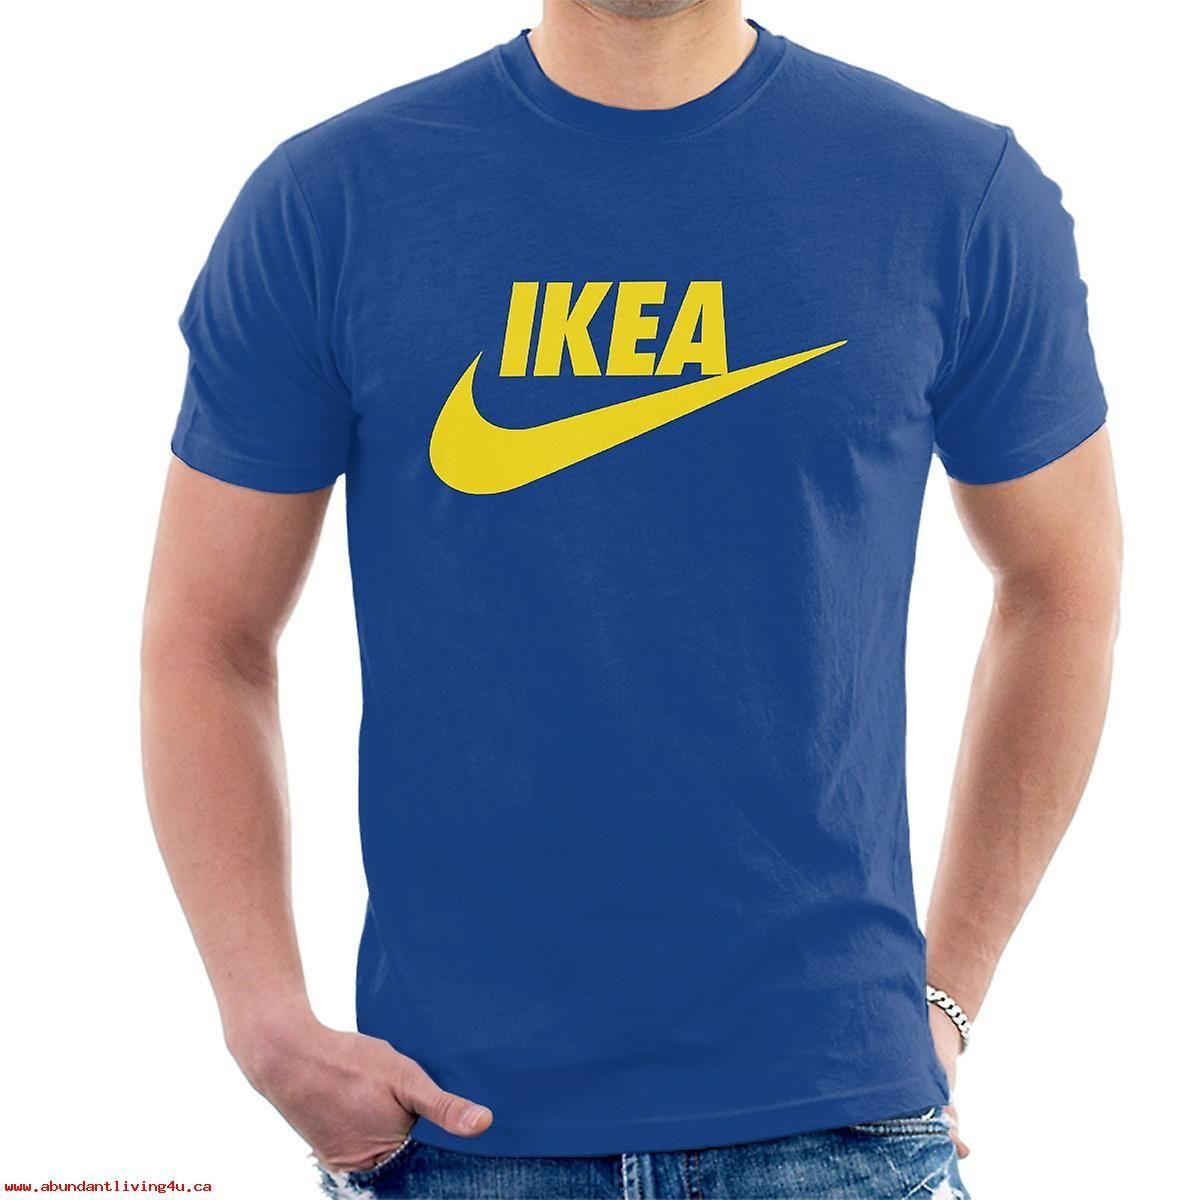 IKEA Yellow Logo - Ikea Nike Yellow Logo Mens T Shirt 8enSdbx0